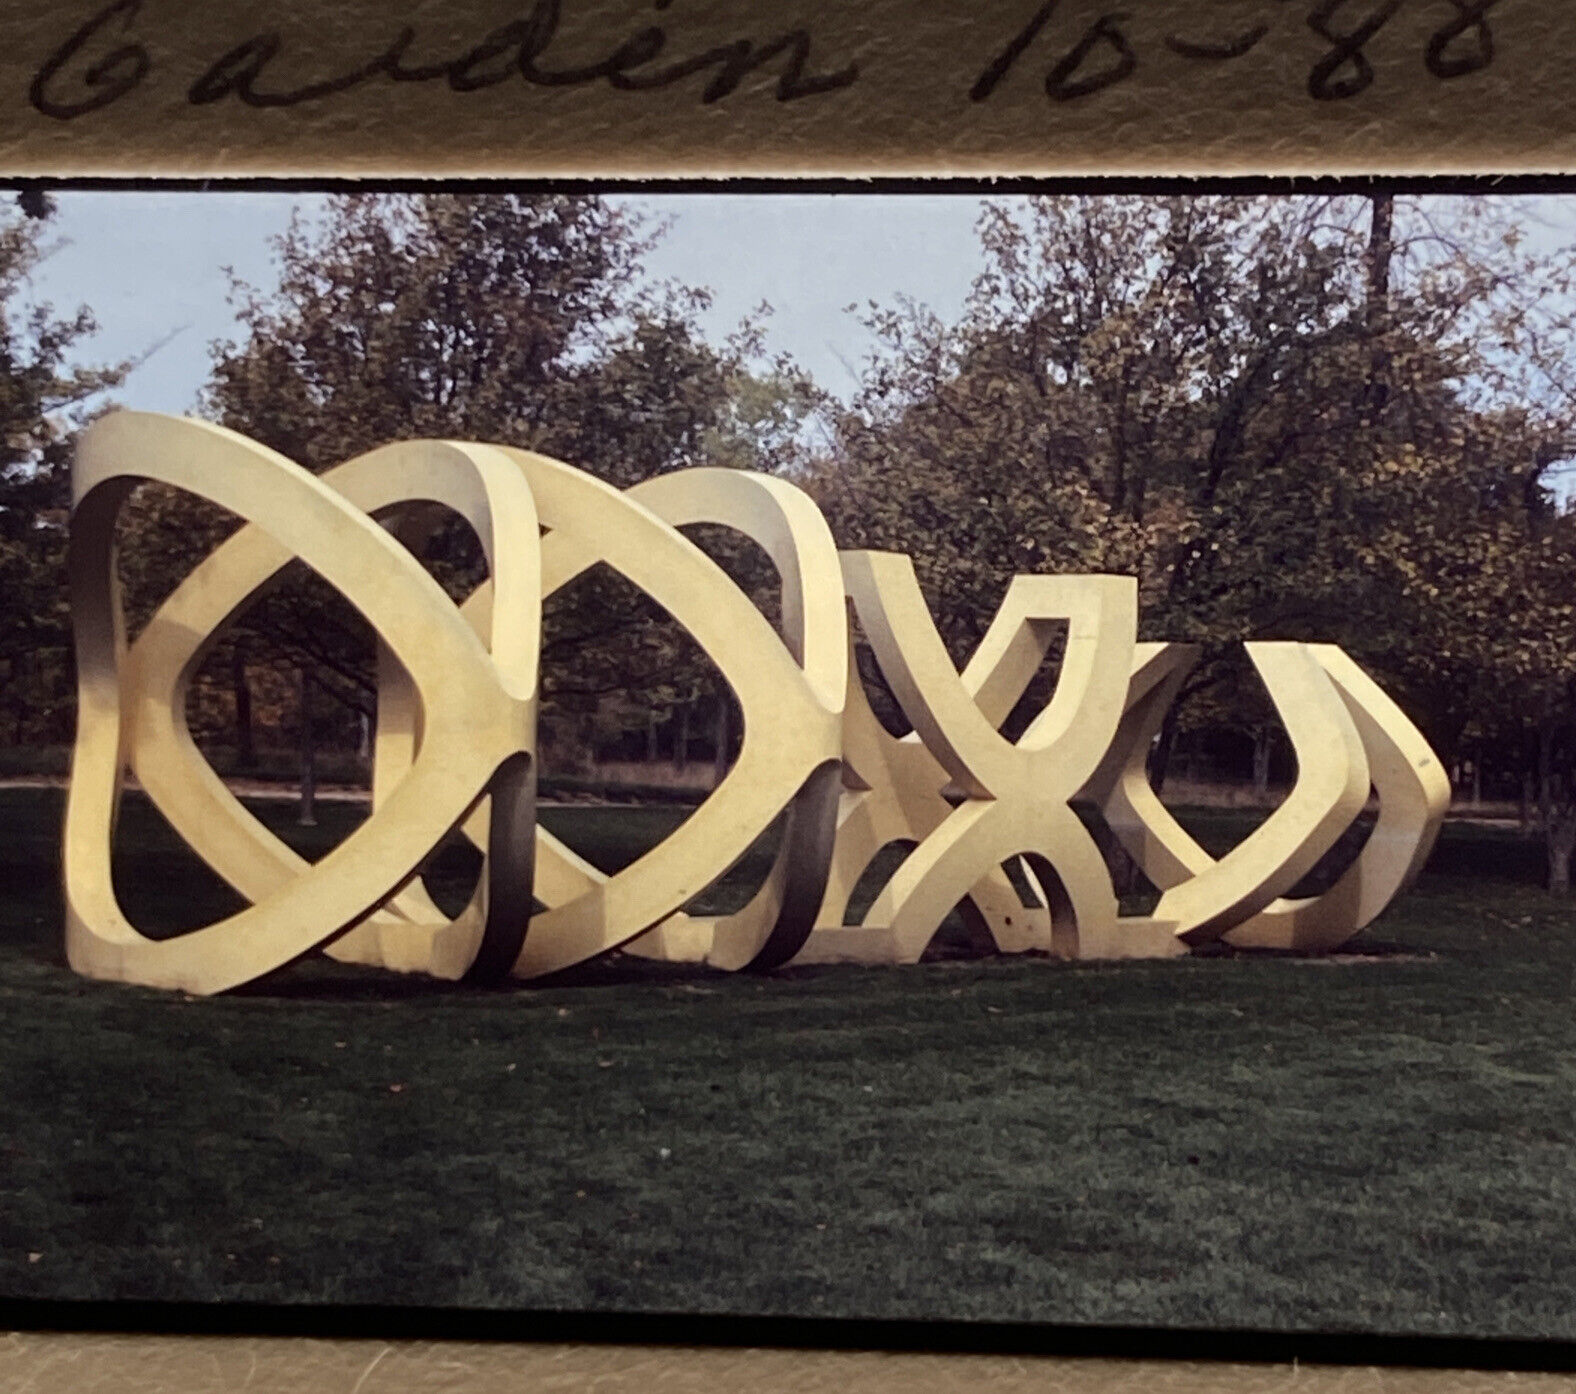 Lot (32) Artistic Image 35mm Slides “Bradley Sculpture Garden” River Hills WI.